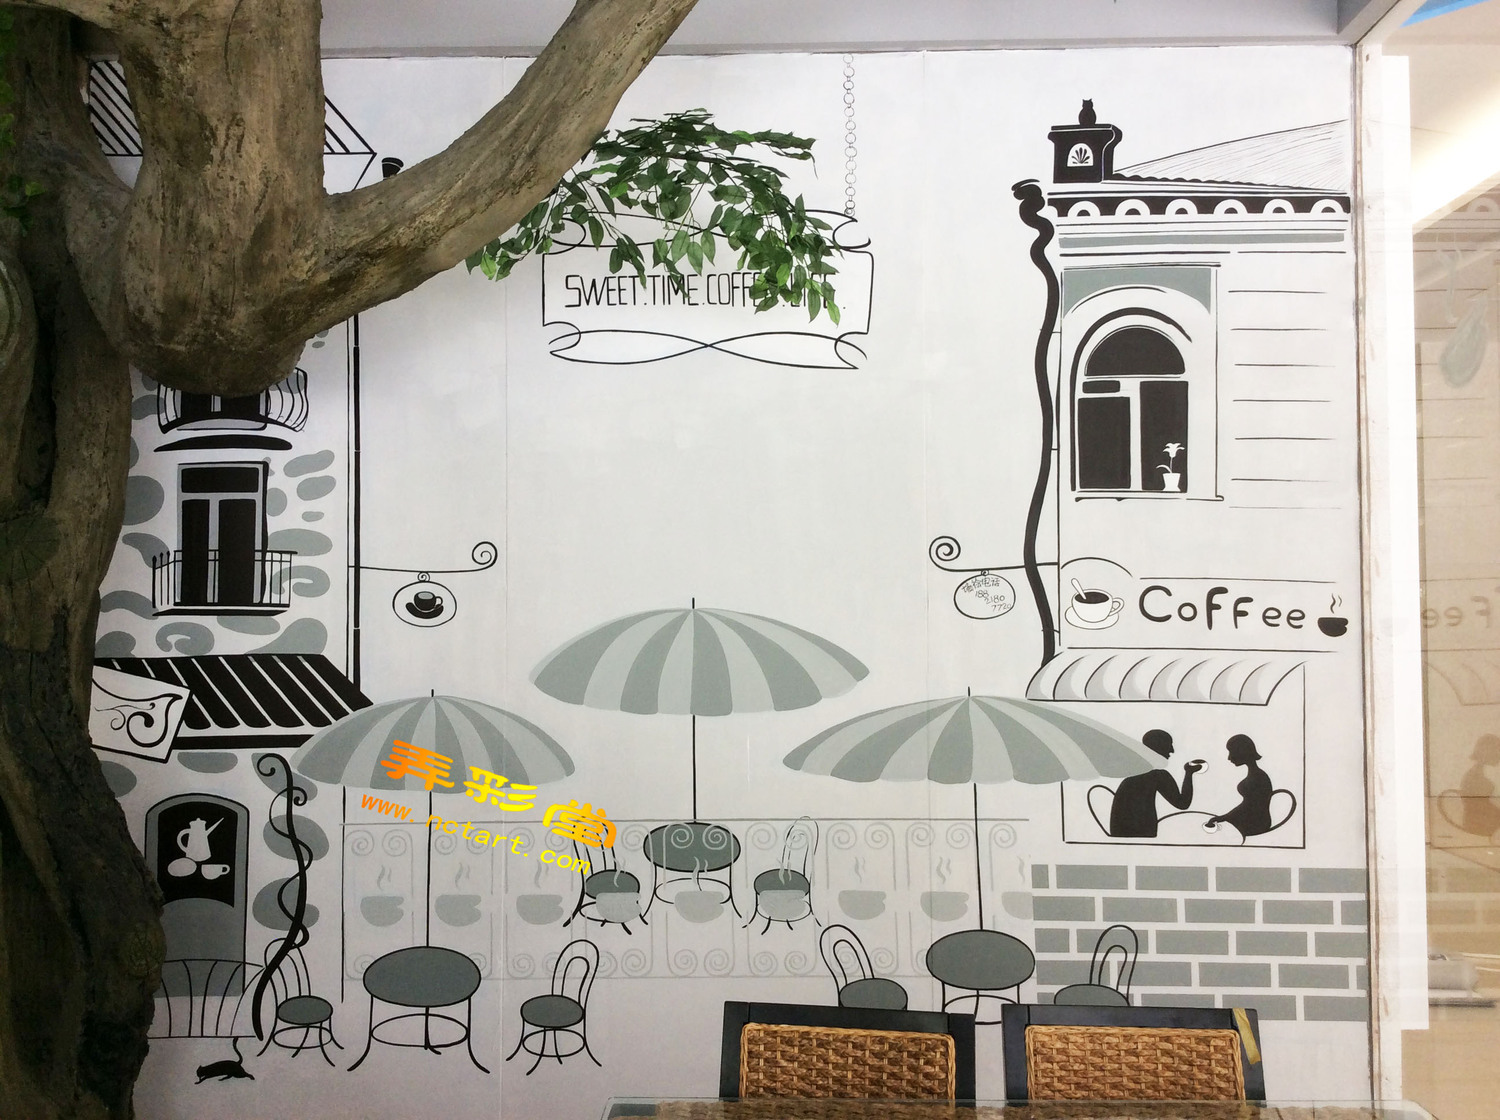 衡阳市悦嘉广场sweet coffee咖啡店墙绘壁画欣赏